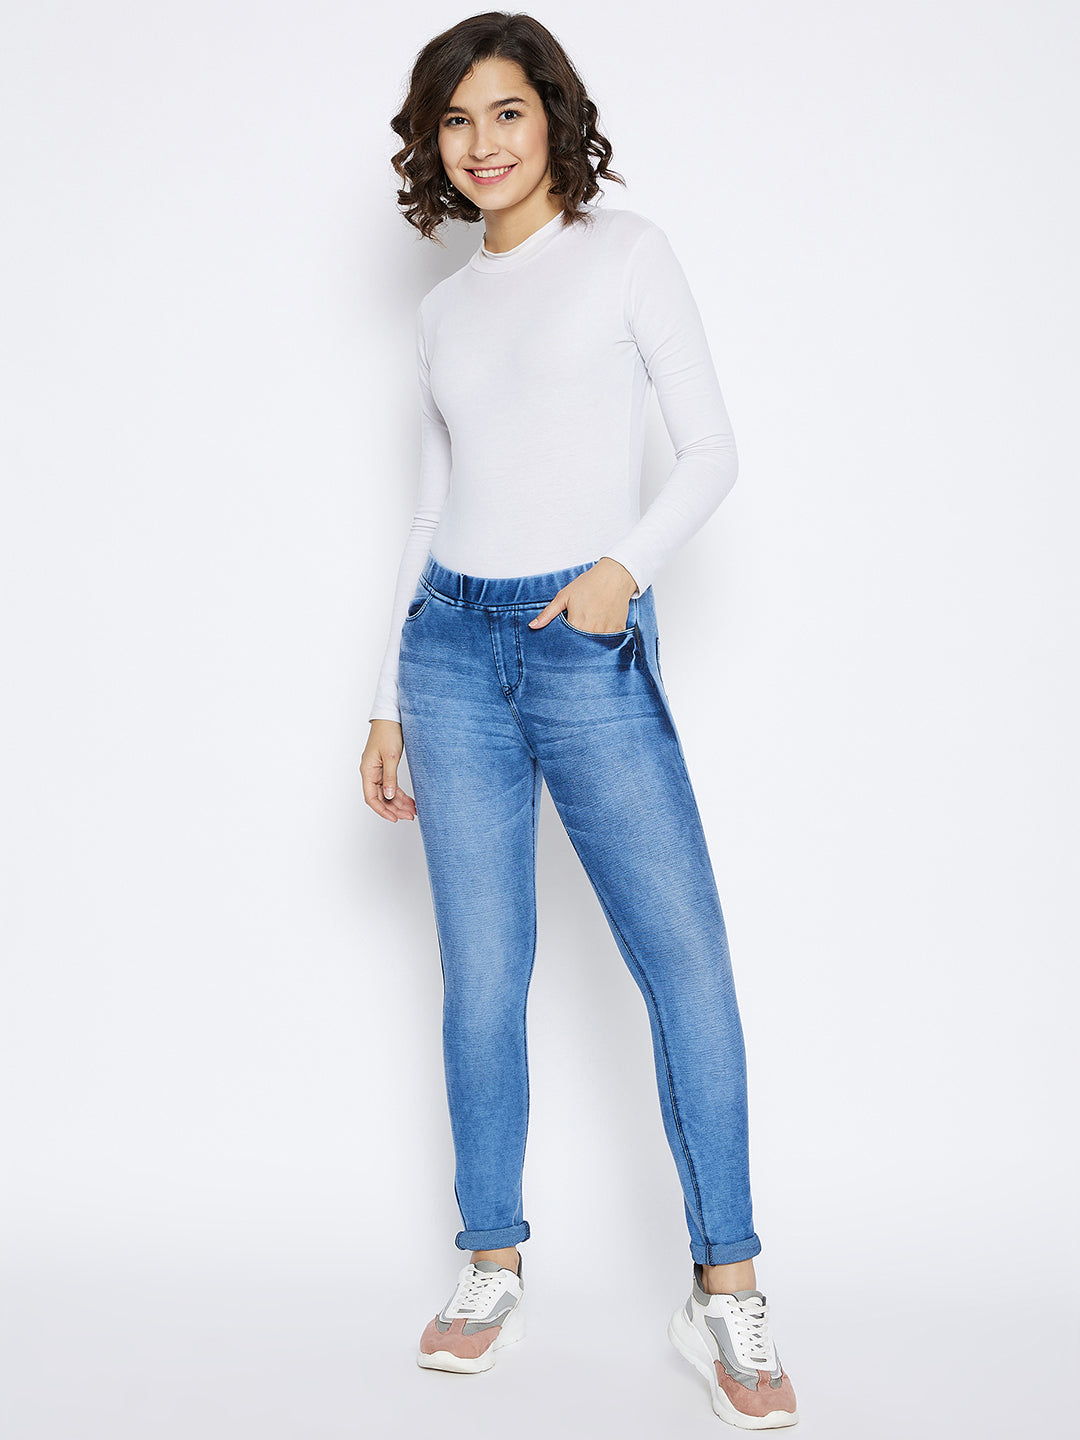 Blue Skinny Fit Jeans - Women Jeans